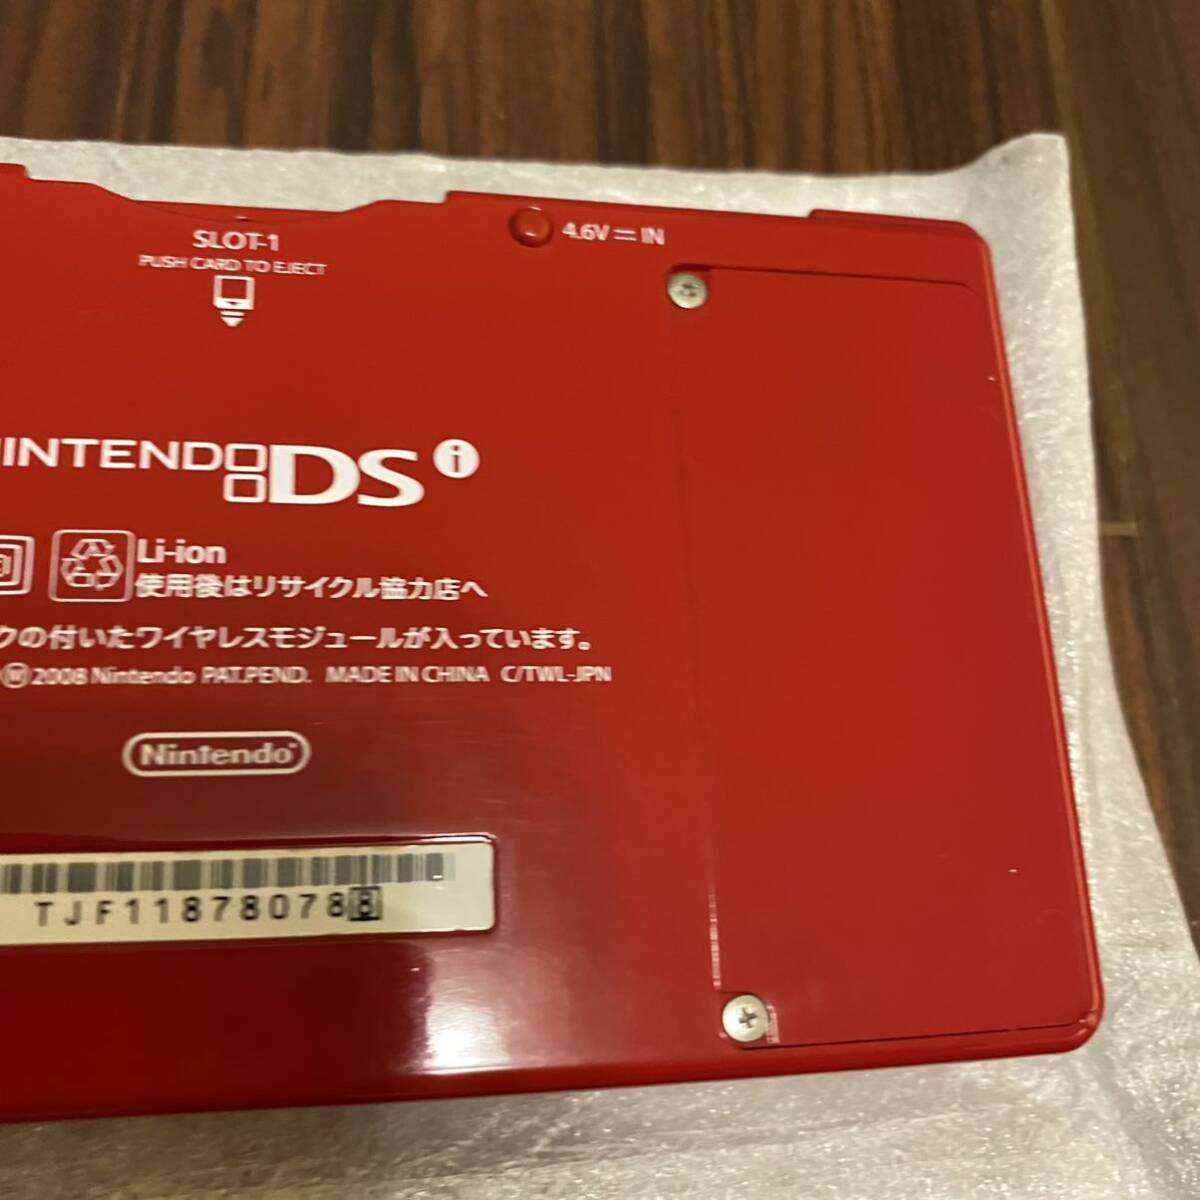 [ превосходный товар ] Nintendo DSi( красный )